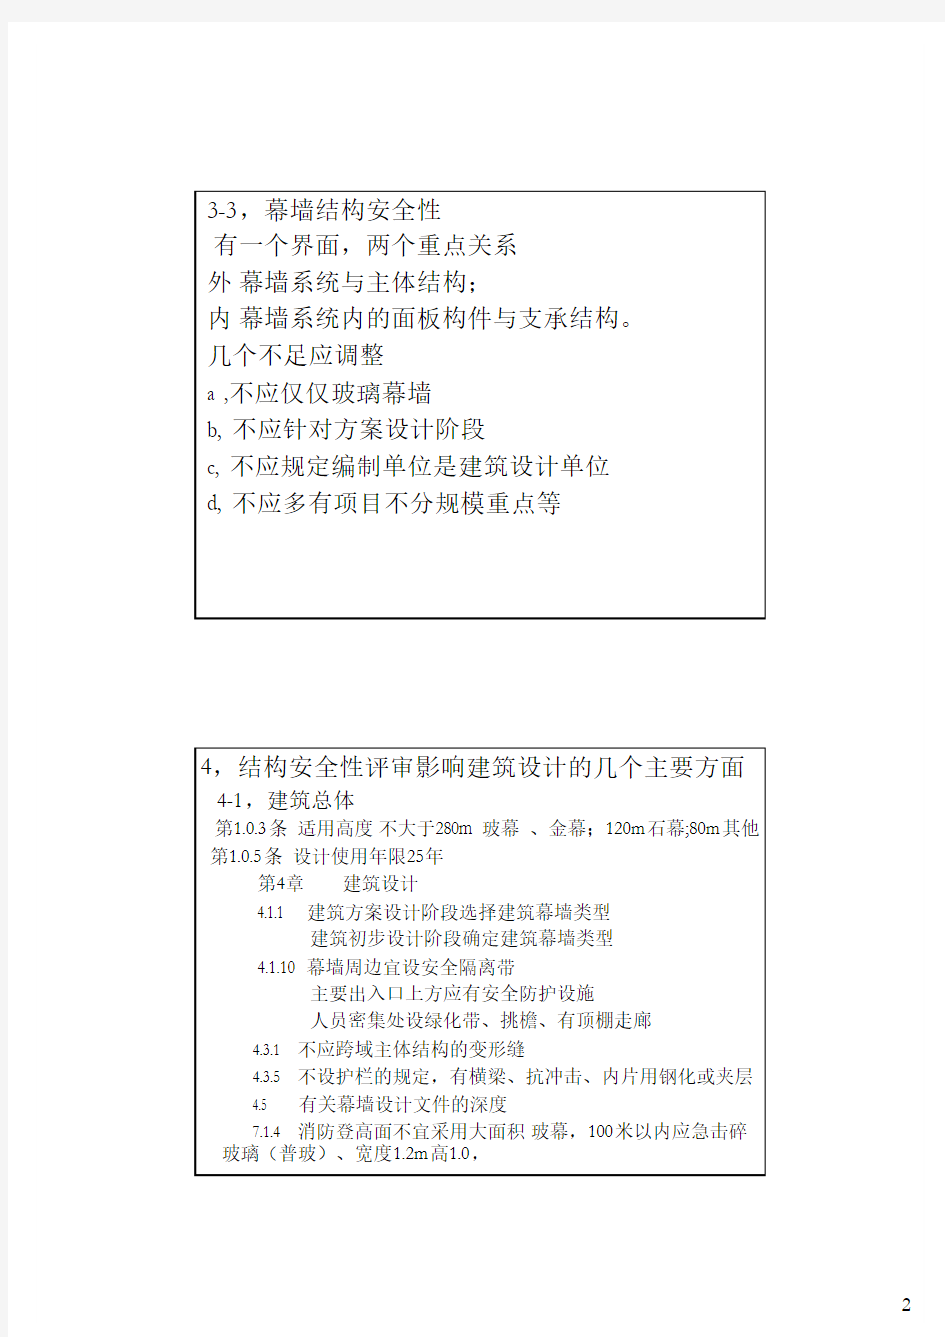 9 关于上海建筑幕墙结构安全性评审